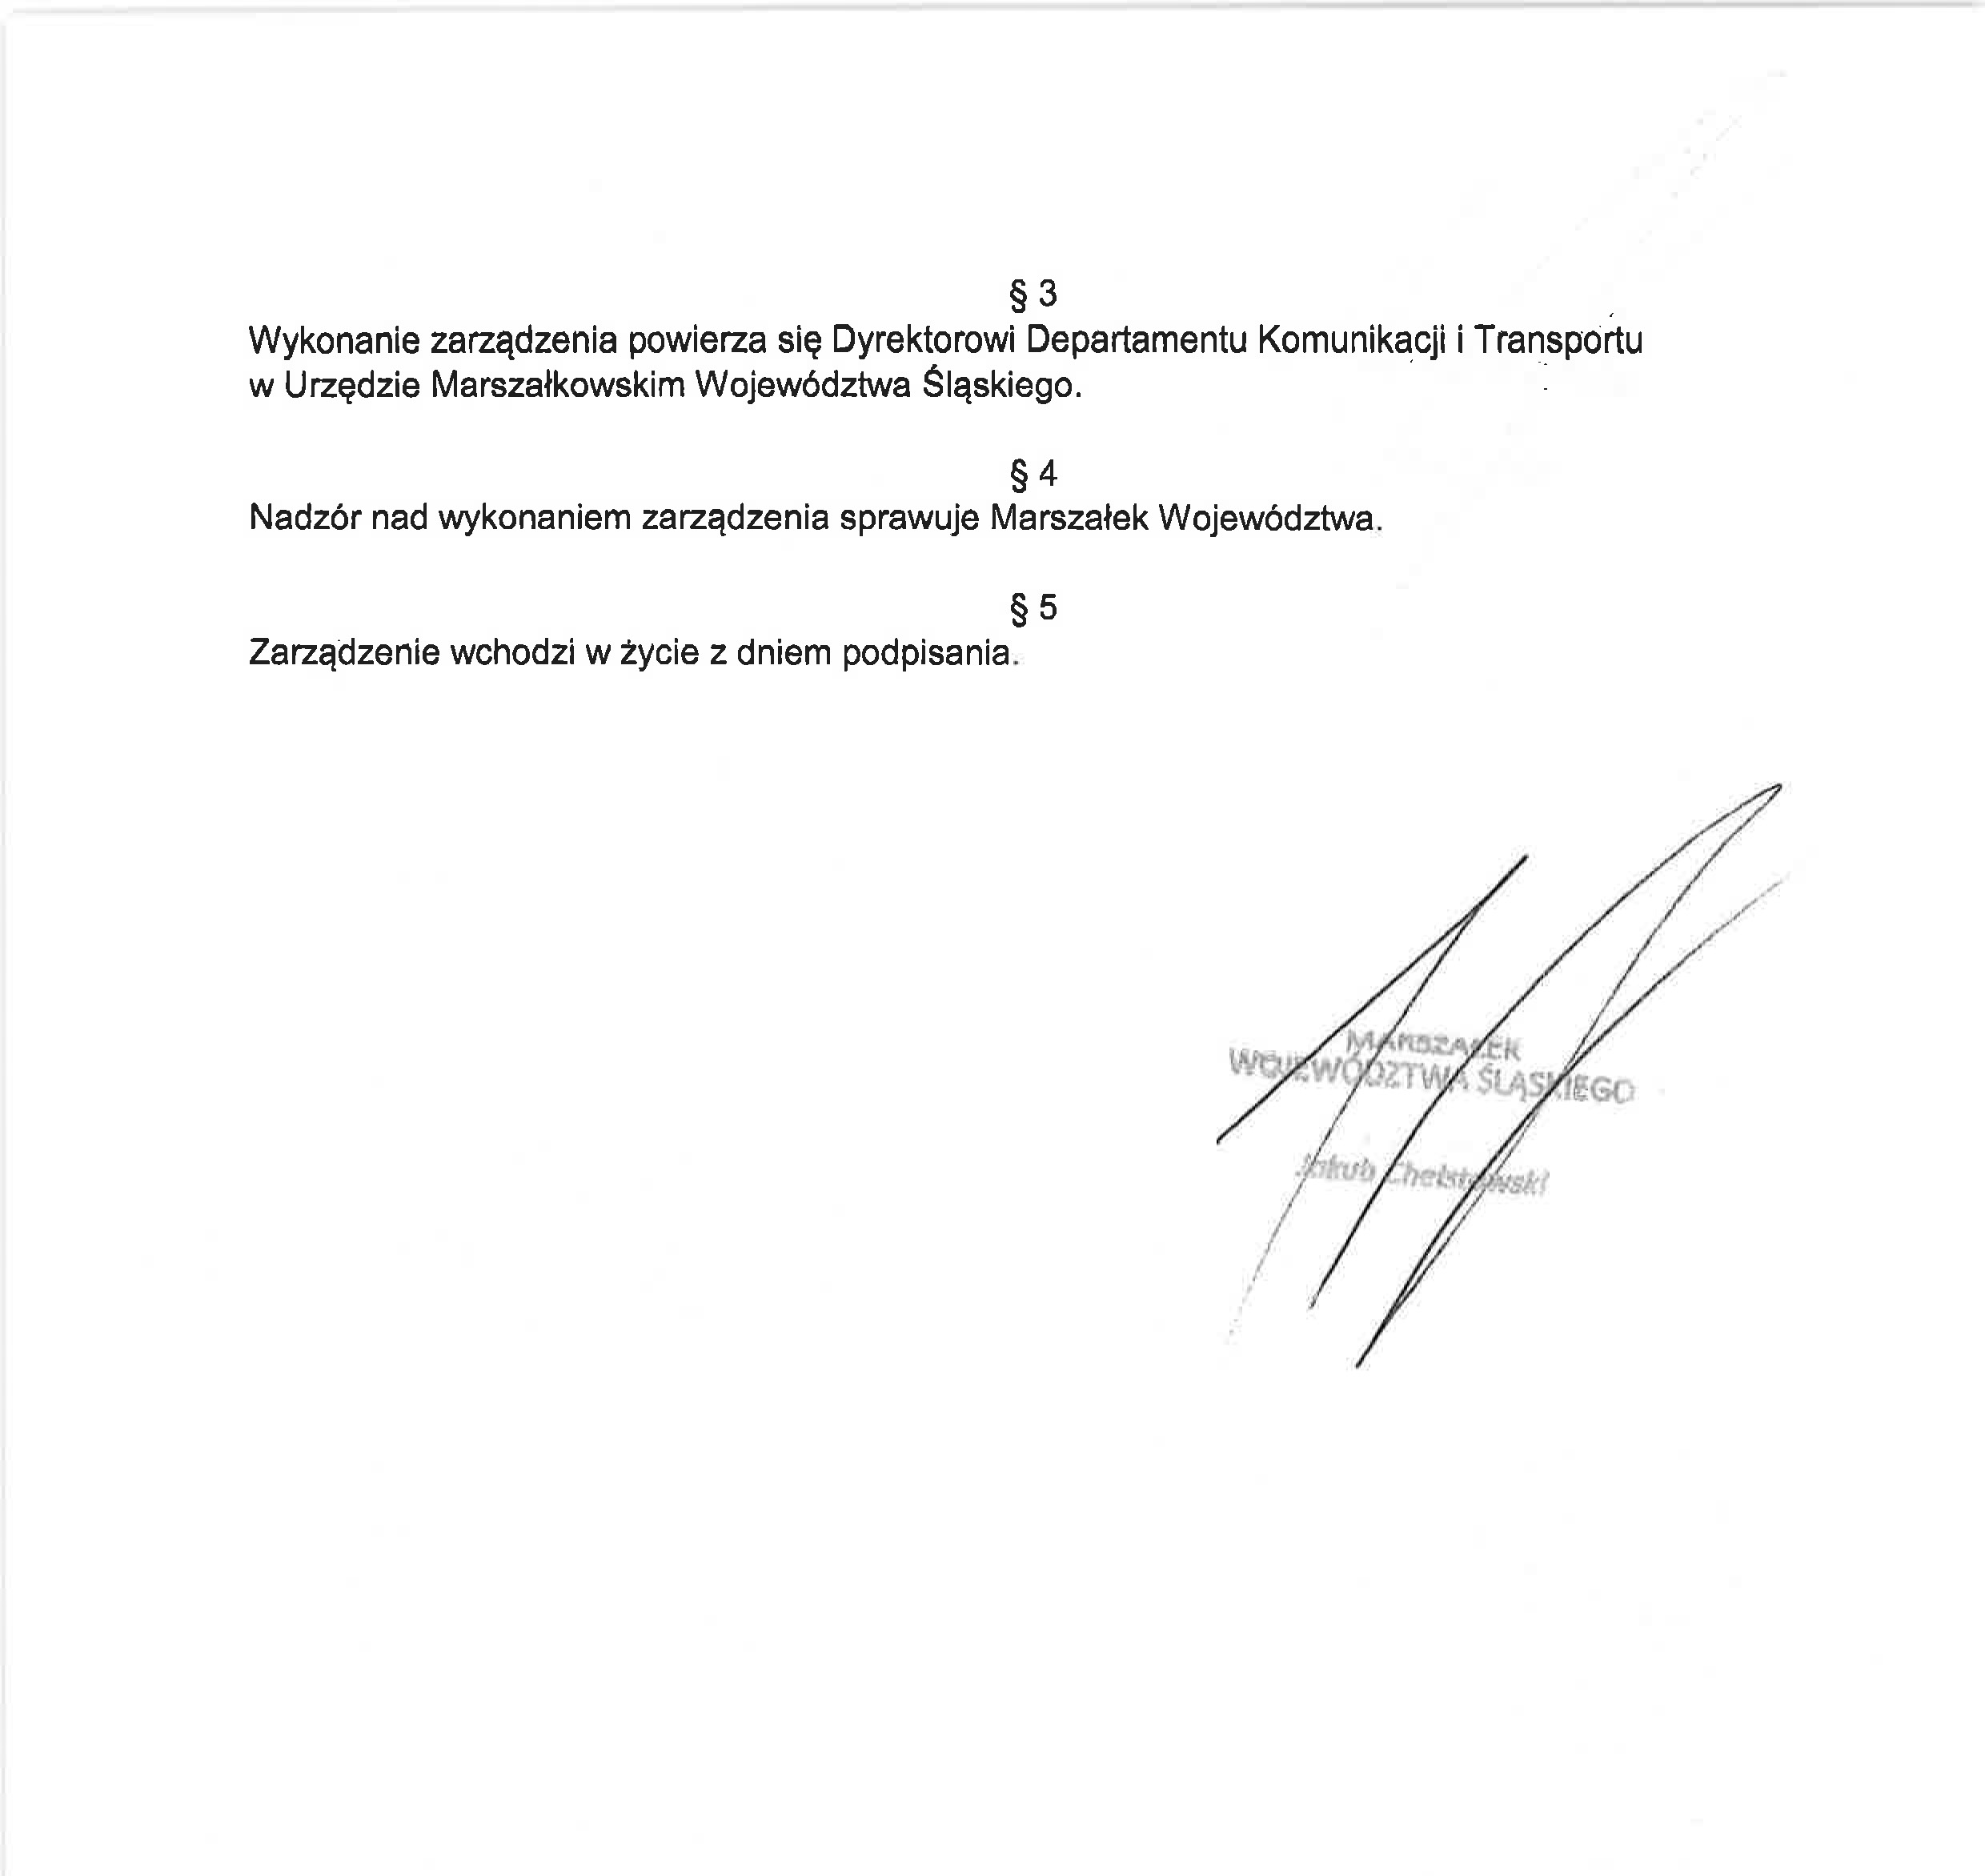 Druga strona zarządzenia podpisana przez Marszałka Województwa śląskiego